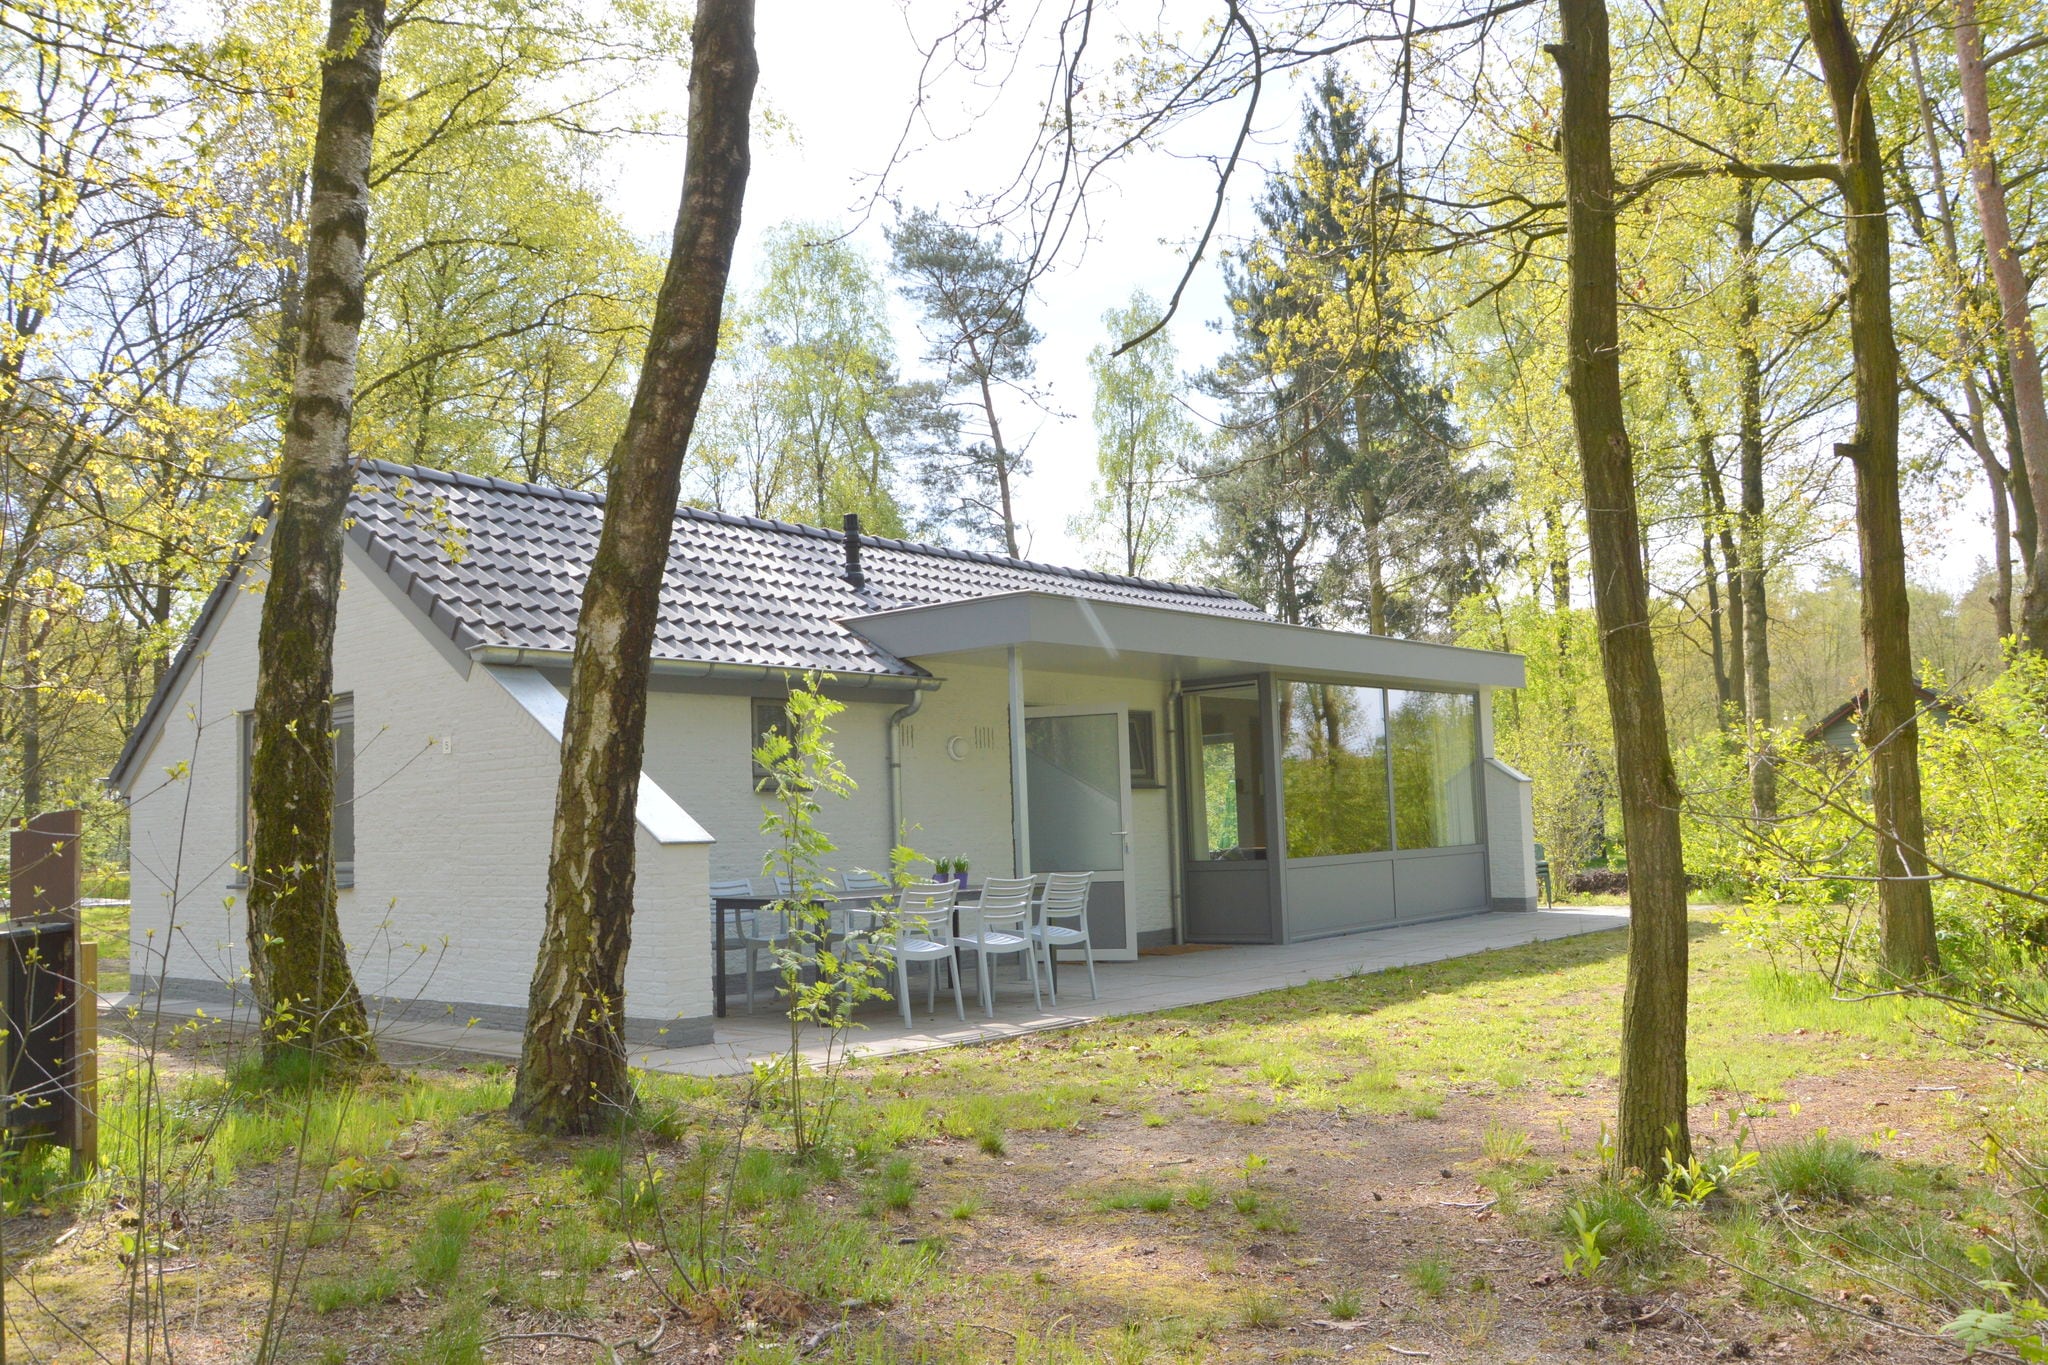 Maison de vacances dans le Limbourg dans une forêt